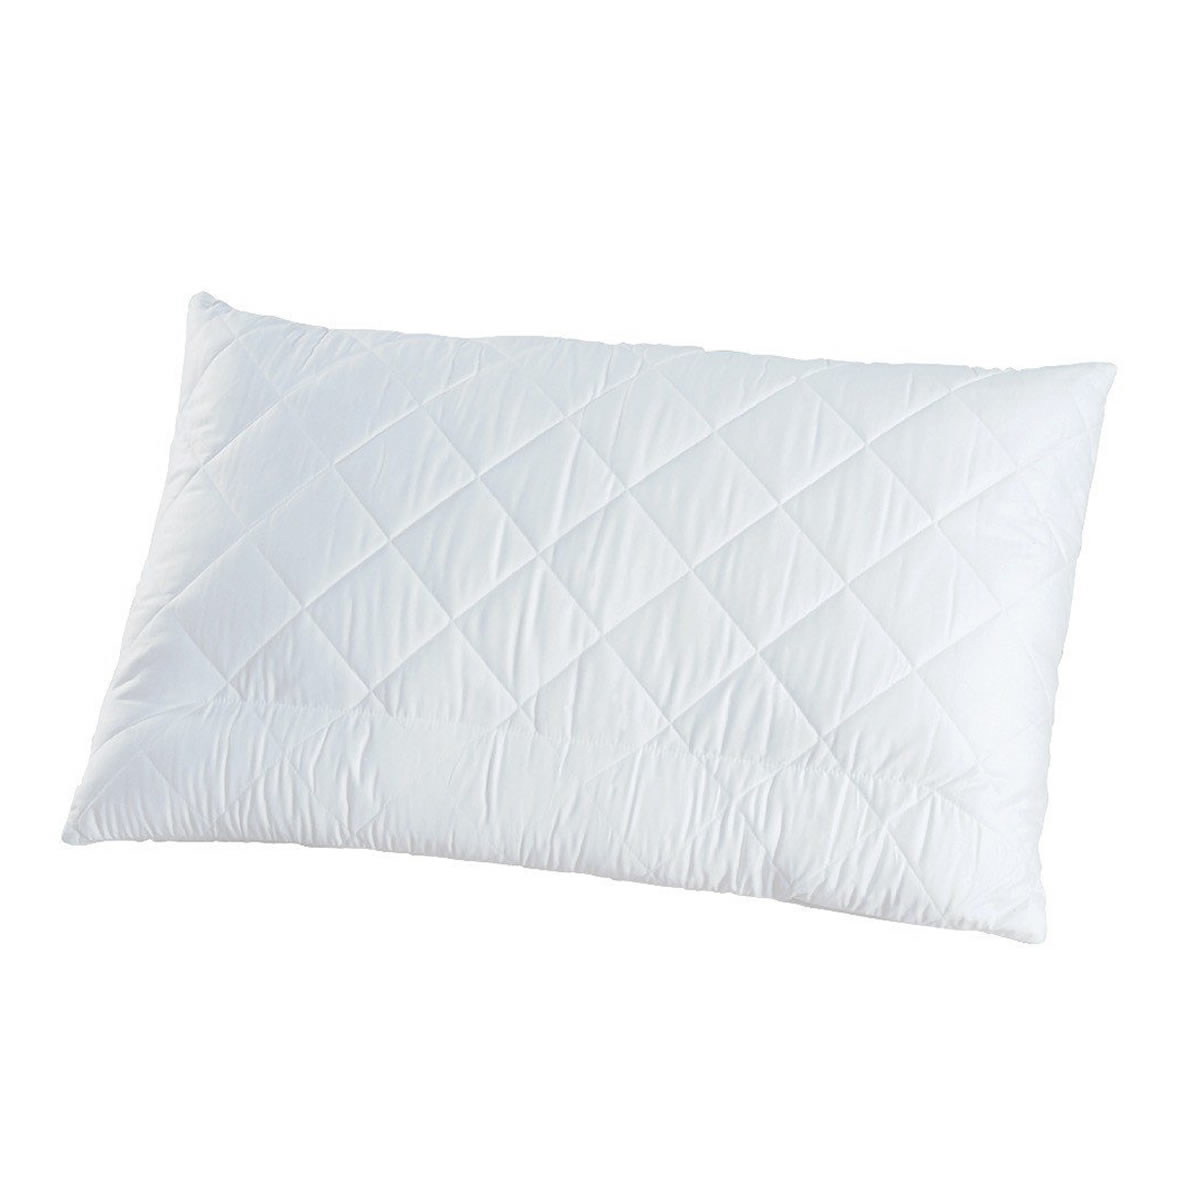 Christian Fischbacher - Neck-support pillow adjustable - ASCONA - Satin